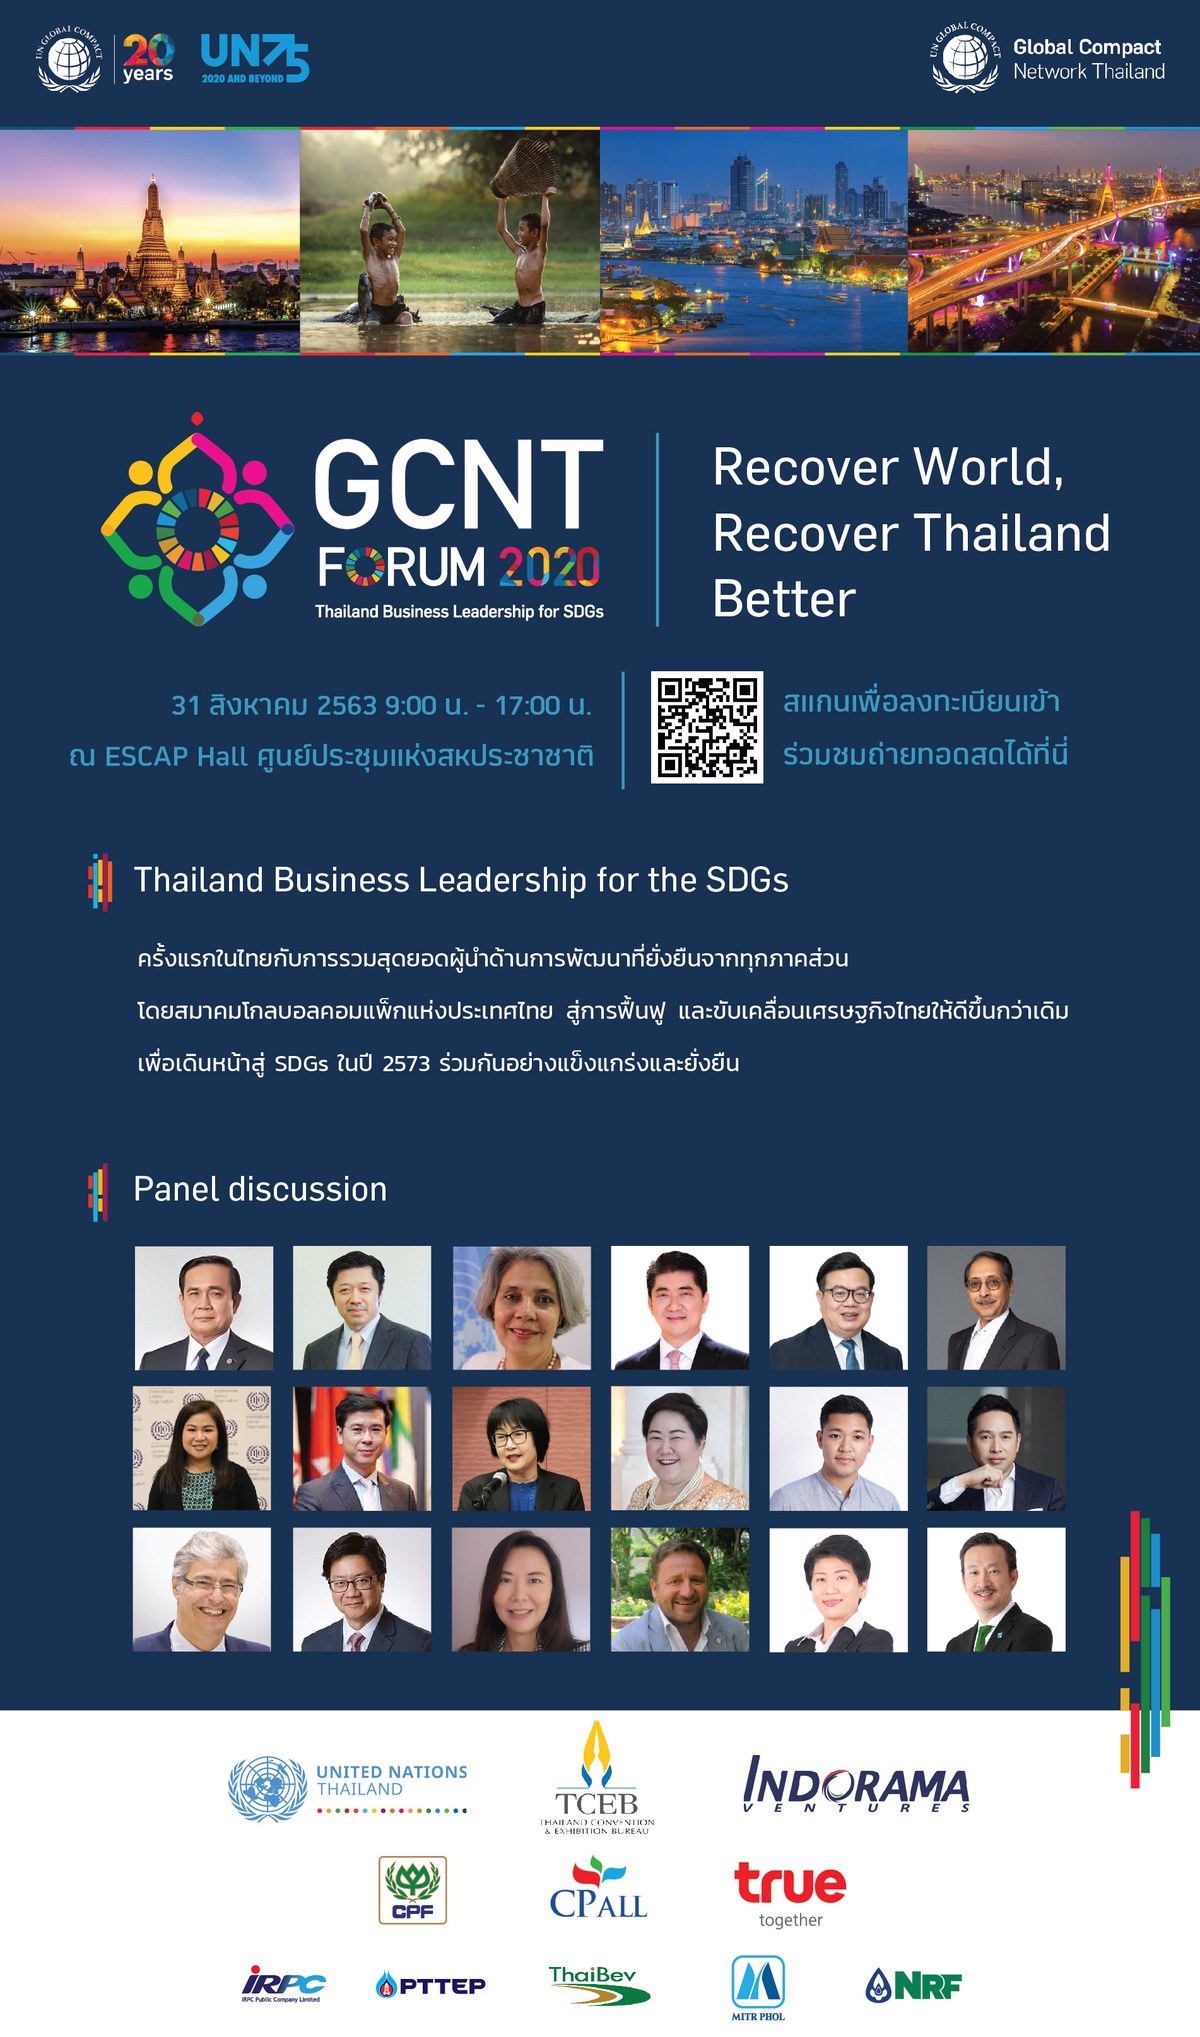 โกลบอลคอมแพ็กประเทศไทย ประกาศจัดงาน GCNT FORUM 2020: Thailand Business Leadership for SDGs เวทีรวมสุดยอดผู้นำด้านการพัฒนาที่ยิ่งใหญ่ของไทย